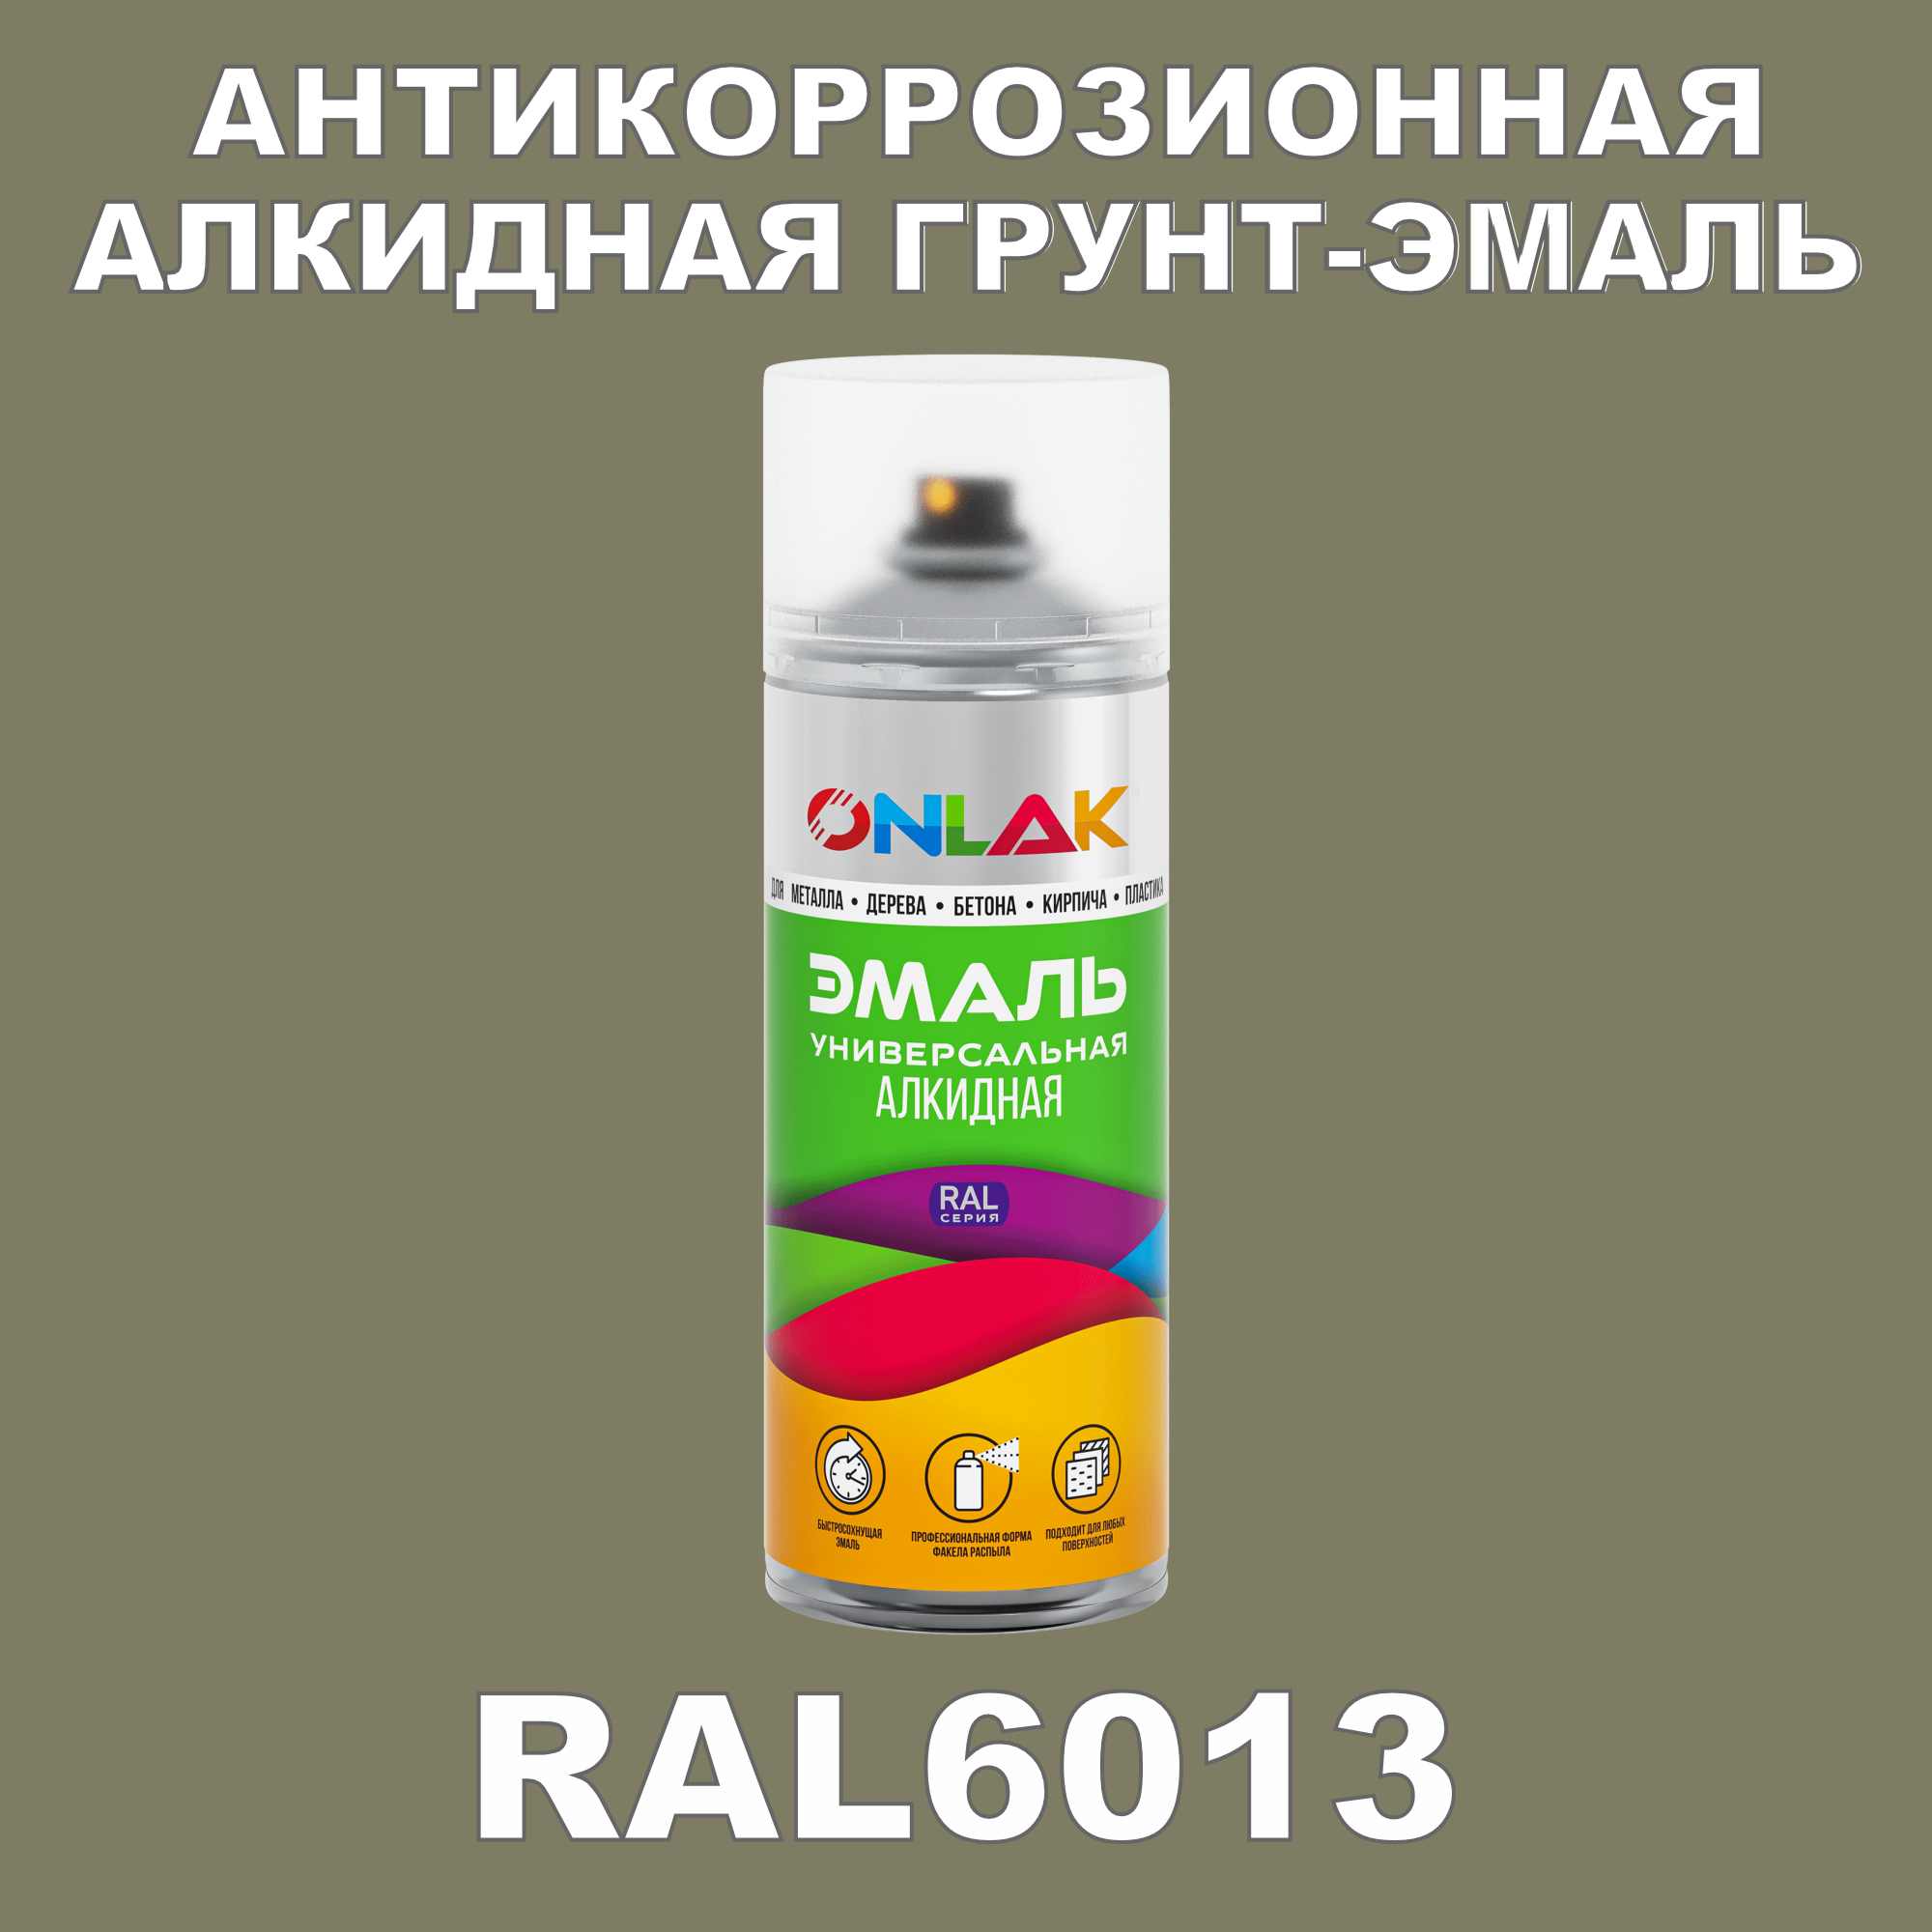 Антикоррозионная грунт-эмаль ONLAK RAL 6013,зеленый,643 мл